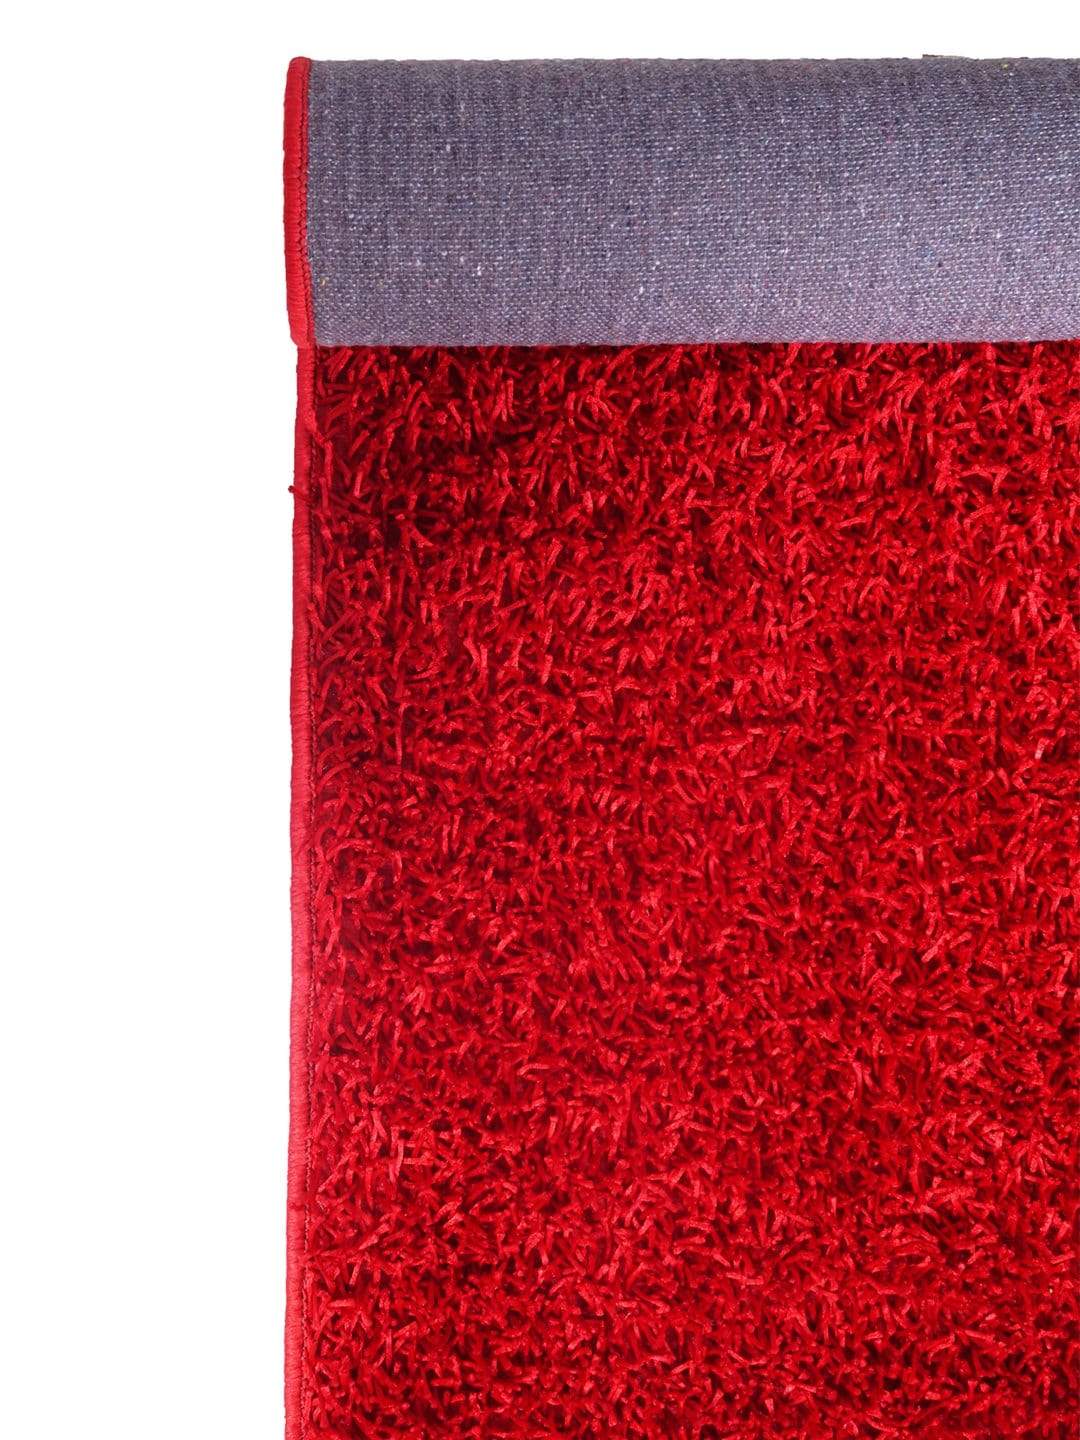 Plain Pattern Red Carpet  for Living Room